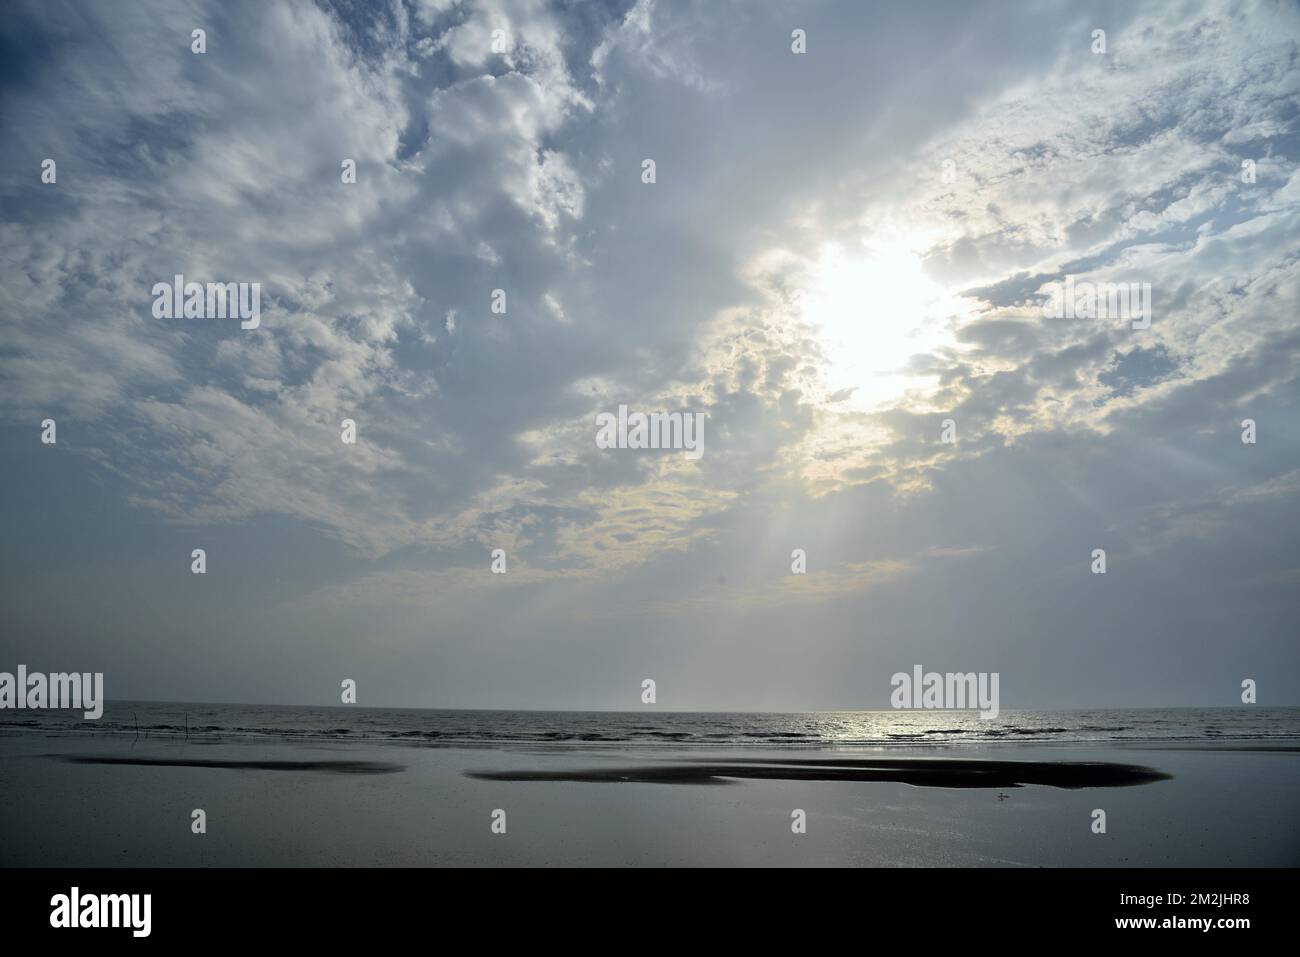 Sunset, sunlight, sunburst, sunrays, sunbeam, Surwada beach, Valsad, Gujarat, India, Asia Stock Photo